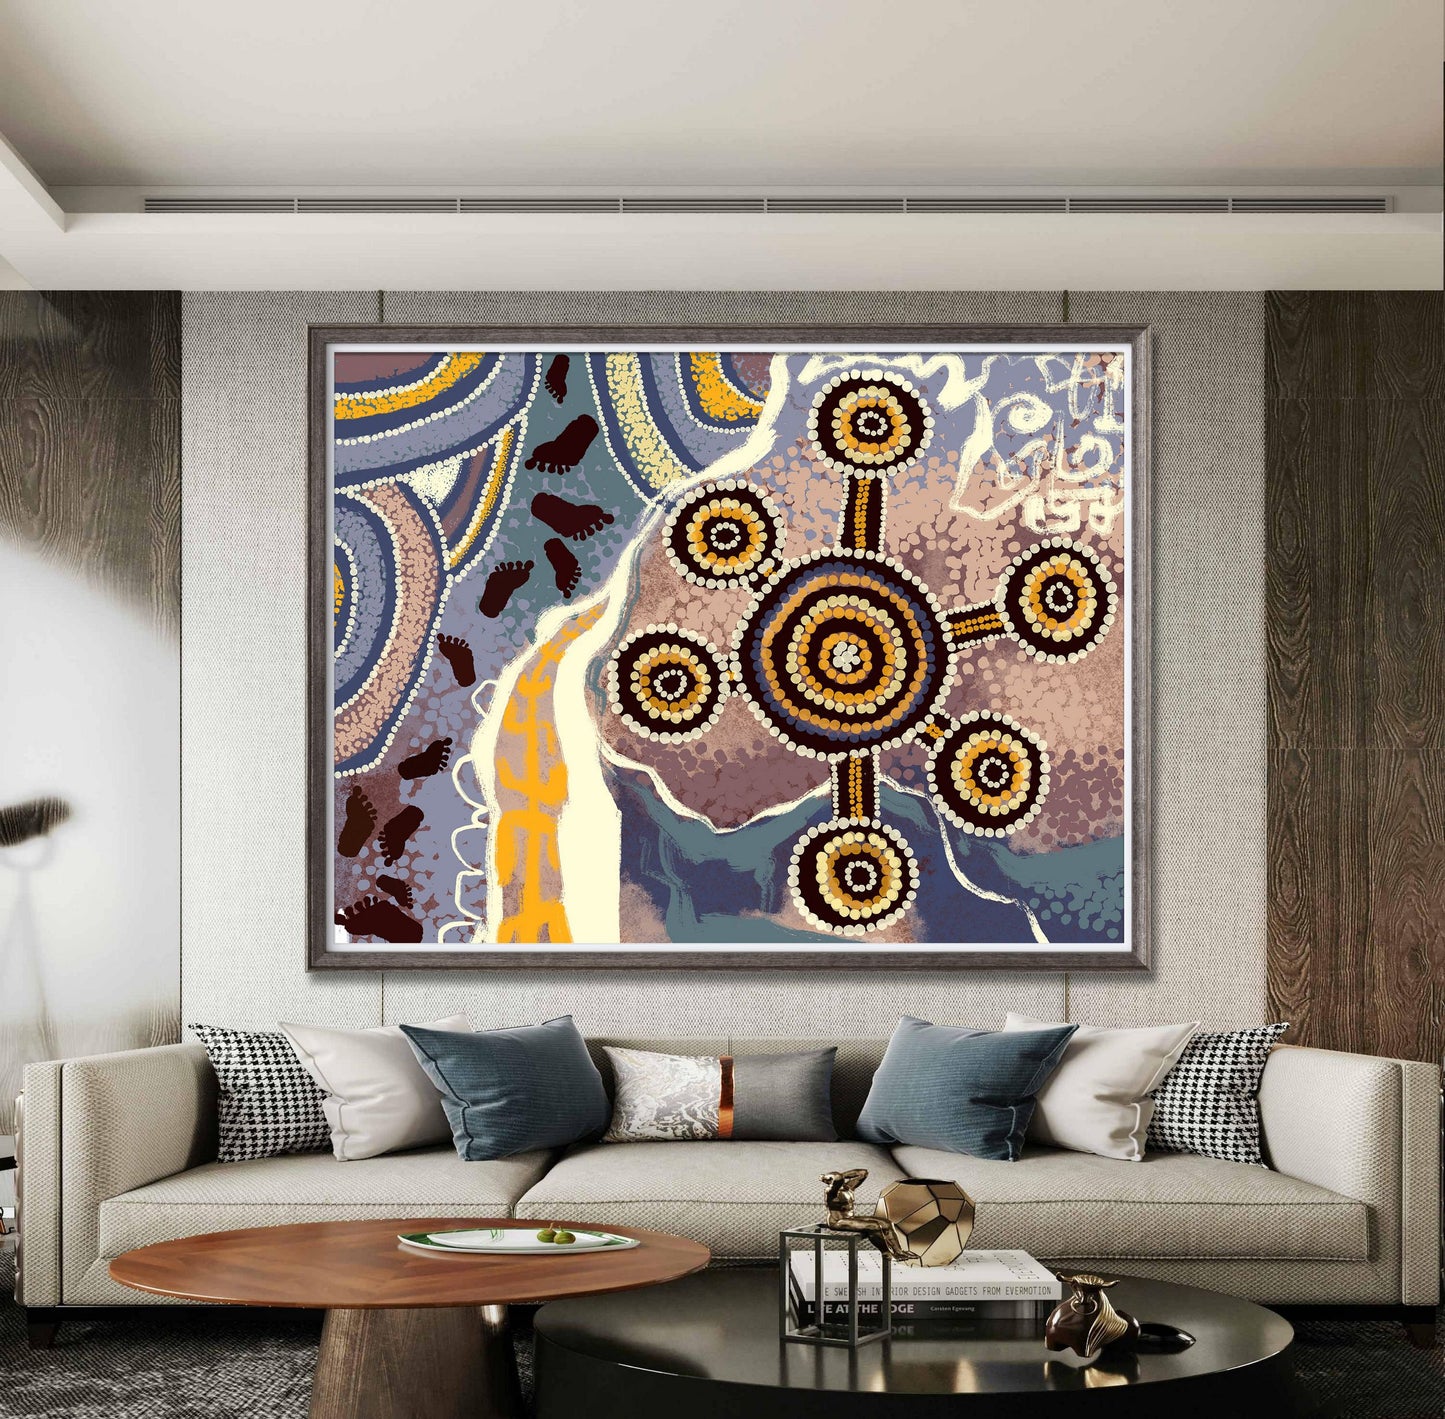 Giclée Print Australian Aboriginal Art, Prints, Wall Art, Abstract Art, Art Poster, Artwork, Modern Wall Art, Original Watercolor Painting